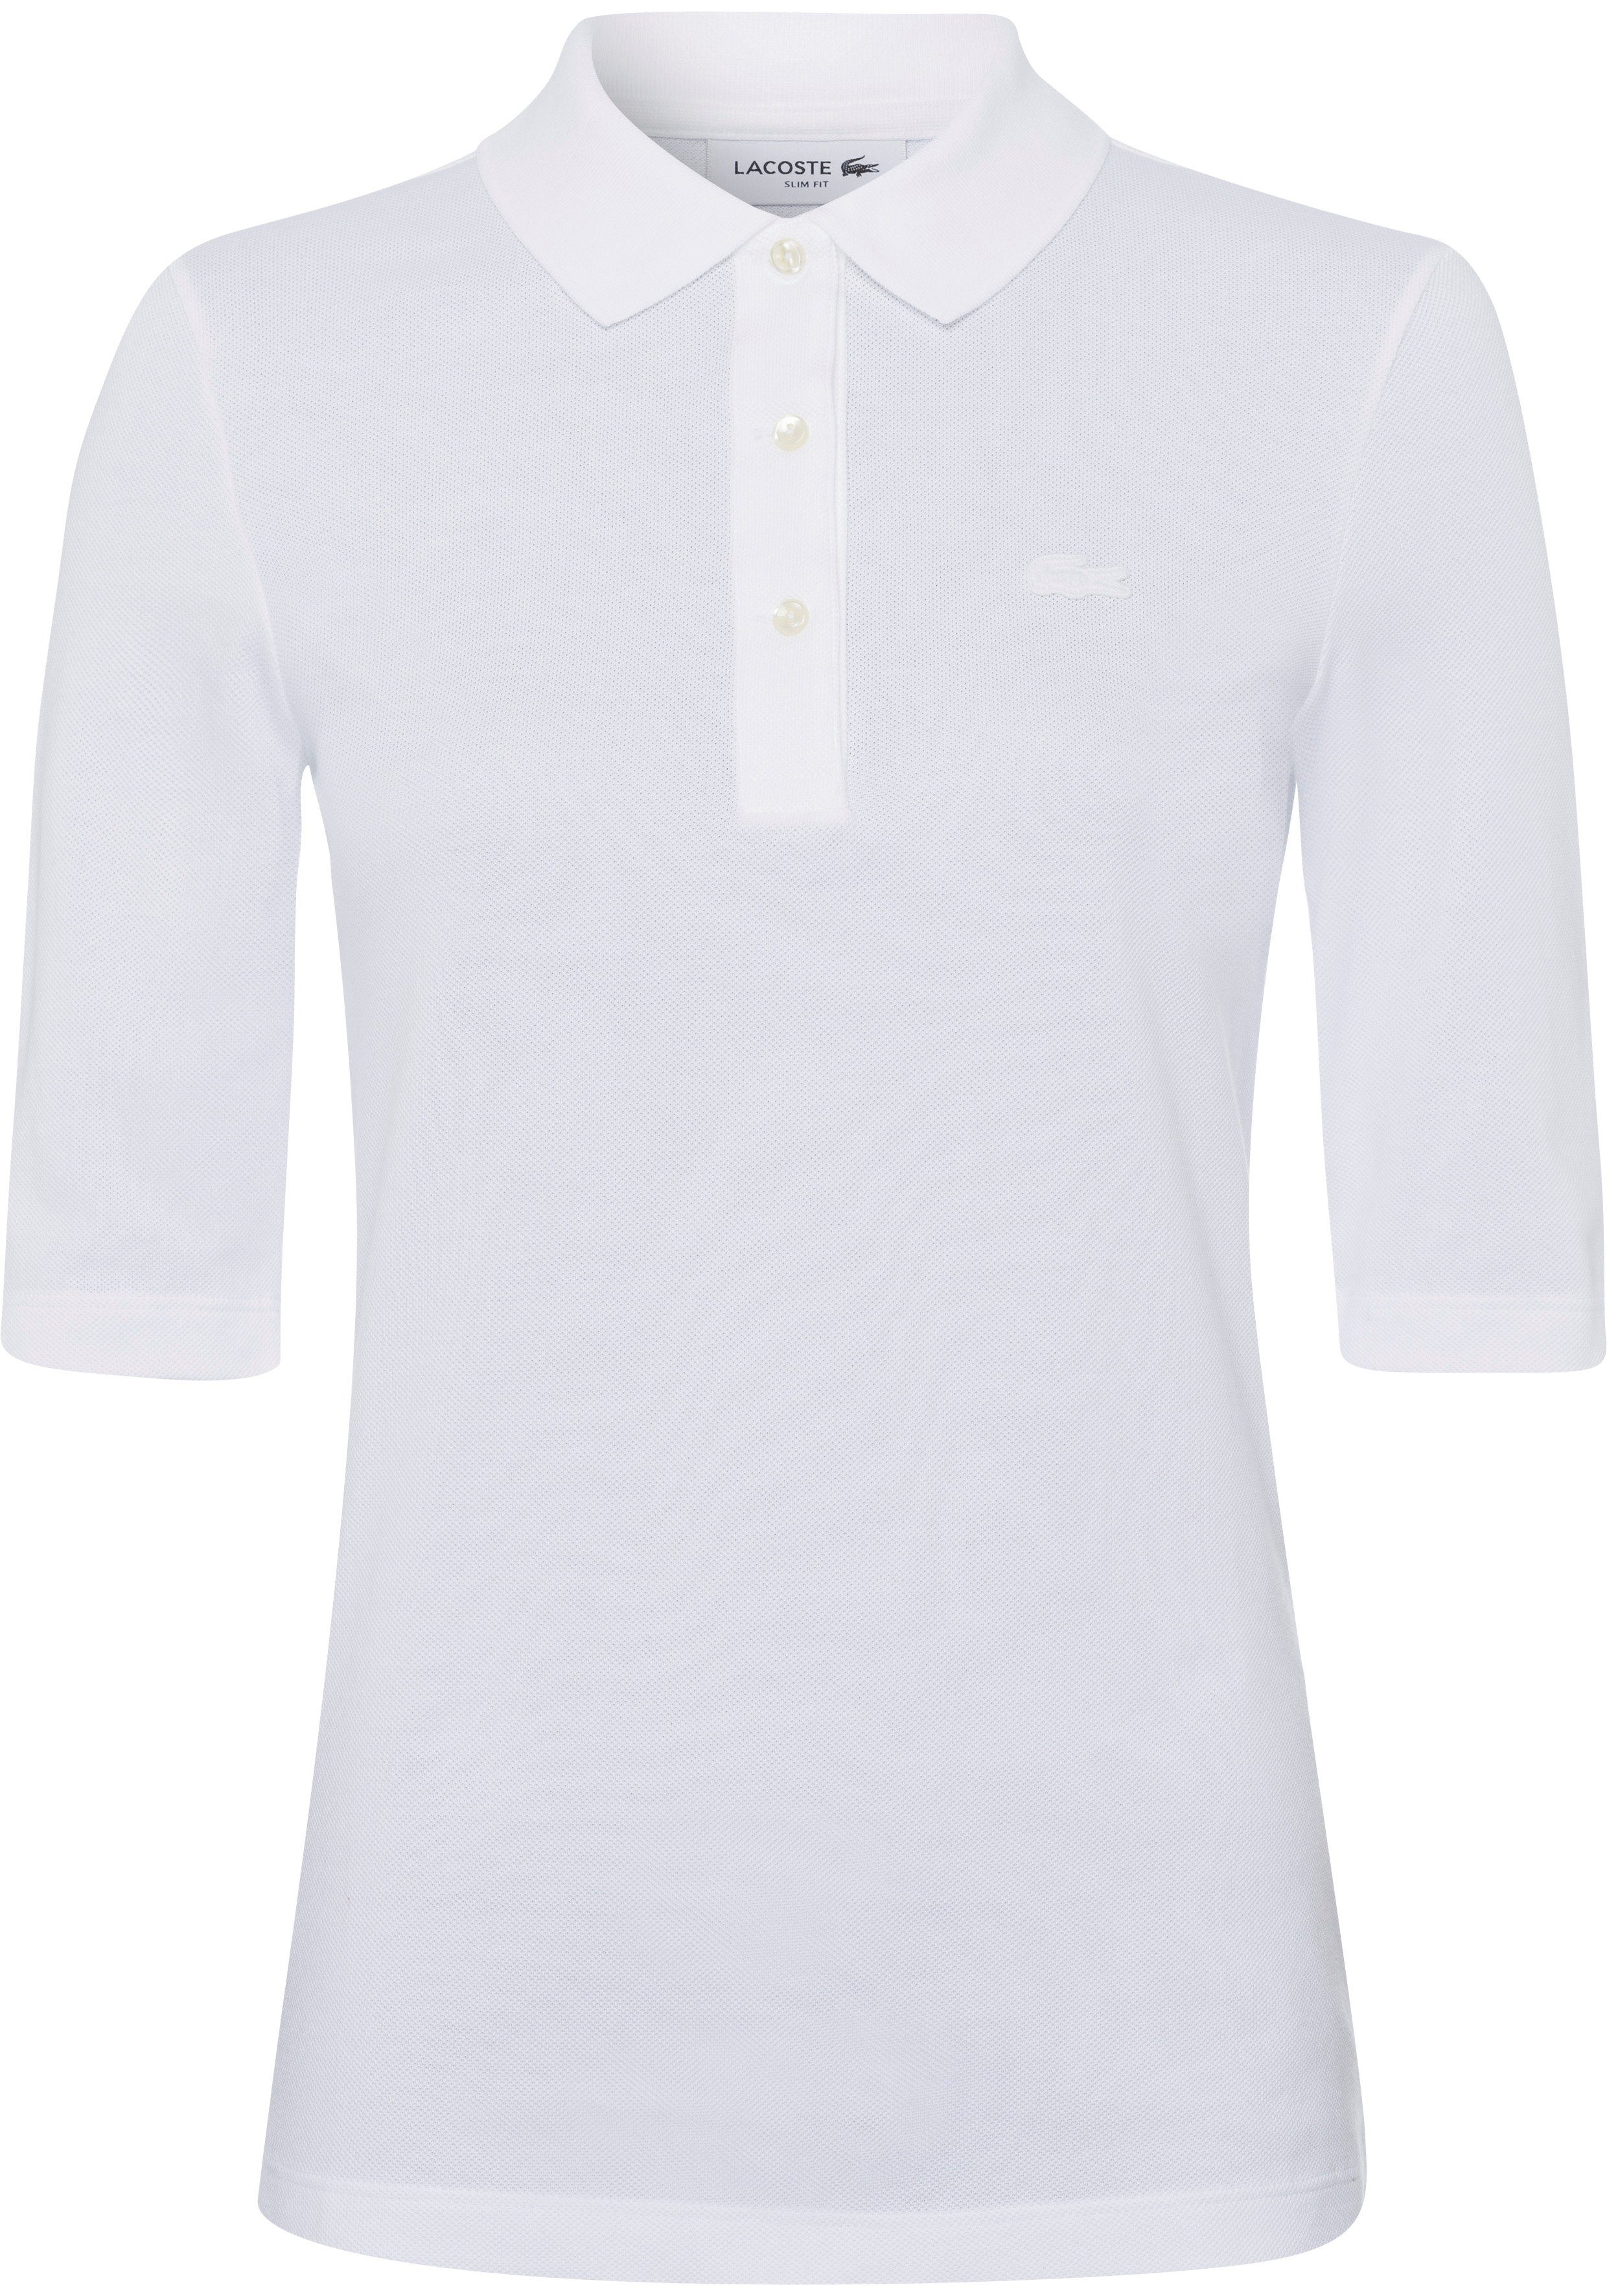 Lacoste Poloshirt mit tonigem Logo auf der Brust blanc